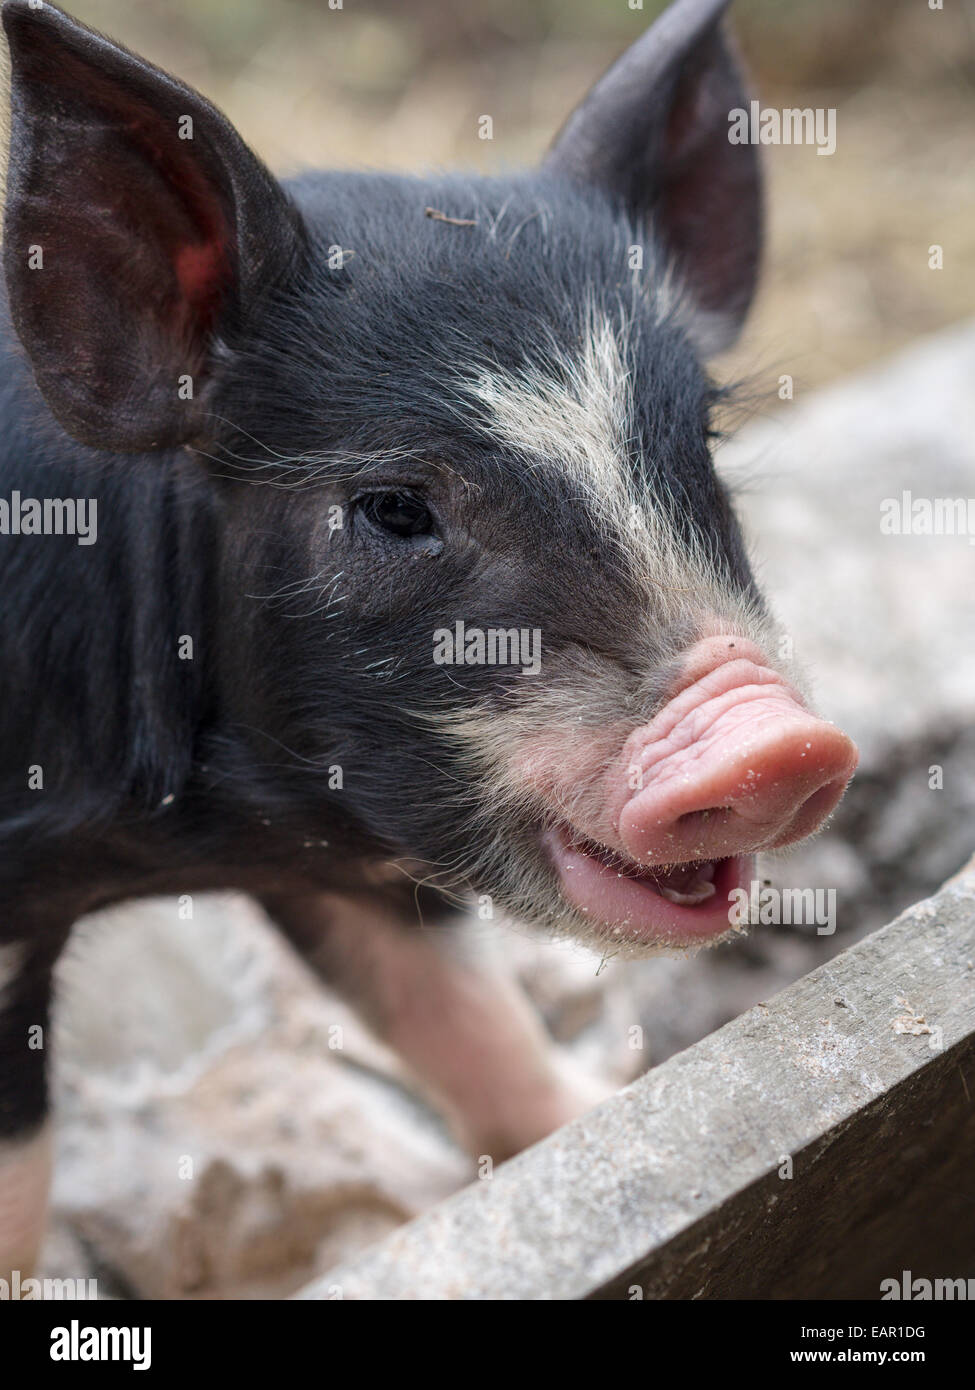 Lechón o cerdo bebé. Una joven raza porcina del patrimonio. Blanco y negro con un hocico rosado. Un lechón. Foto de stock